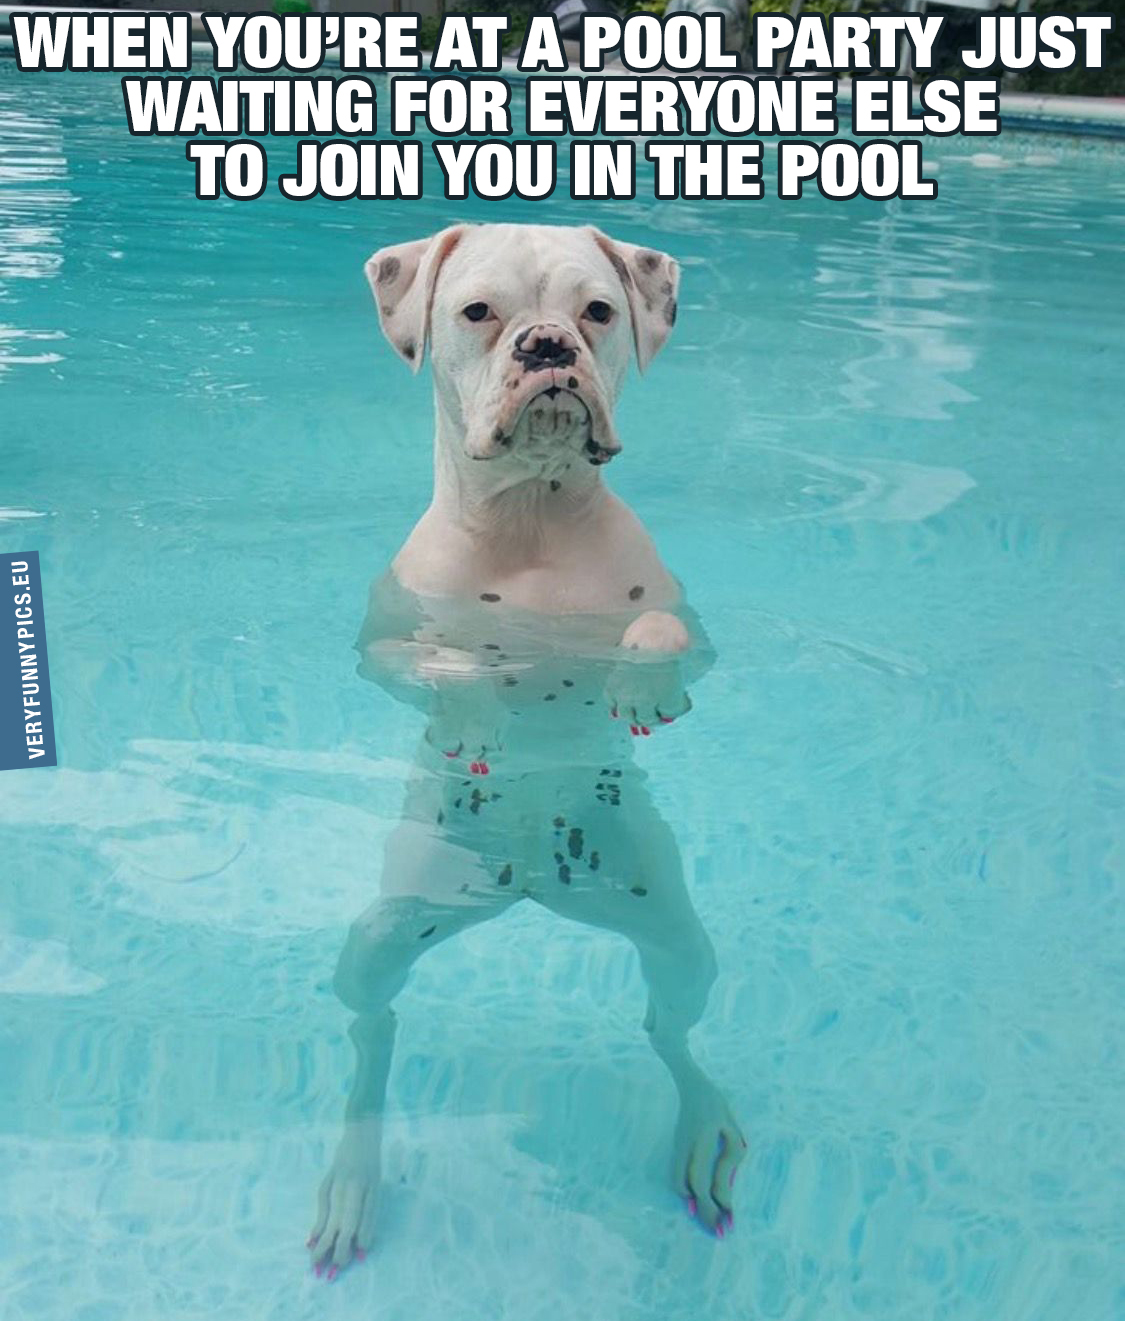 Grumpy dog in a pool